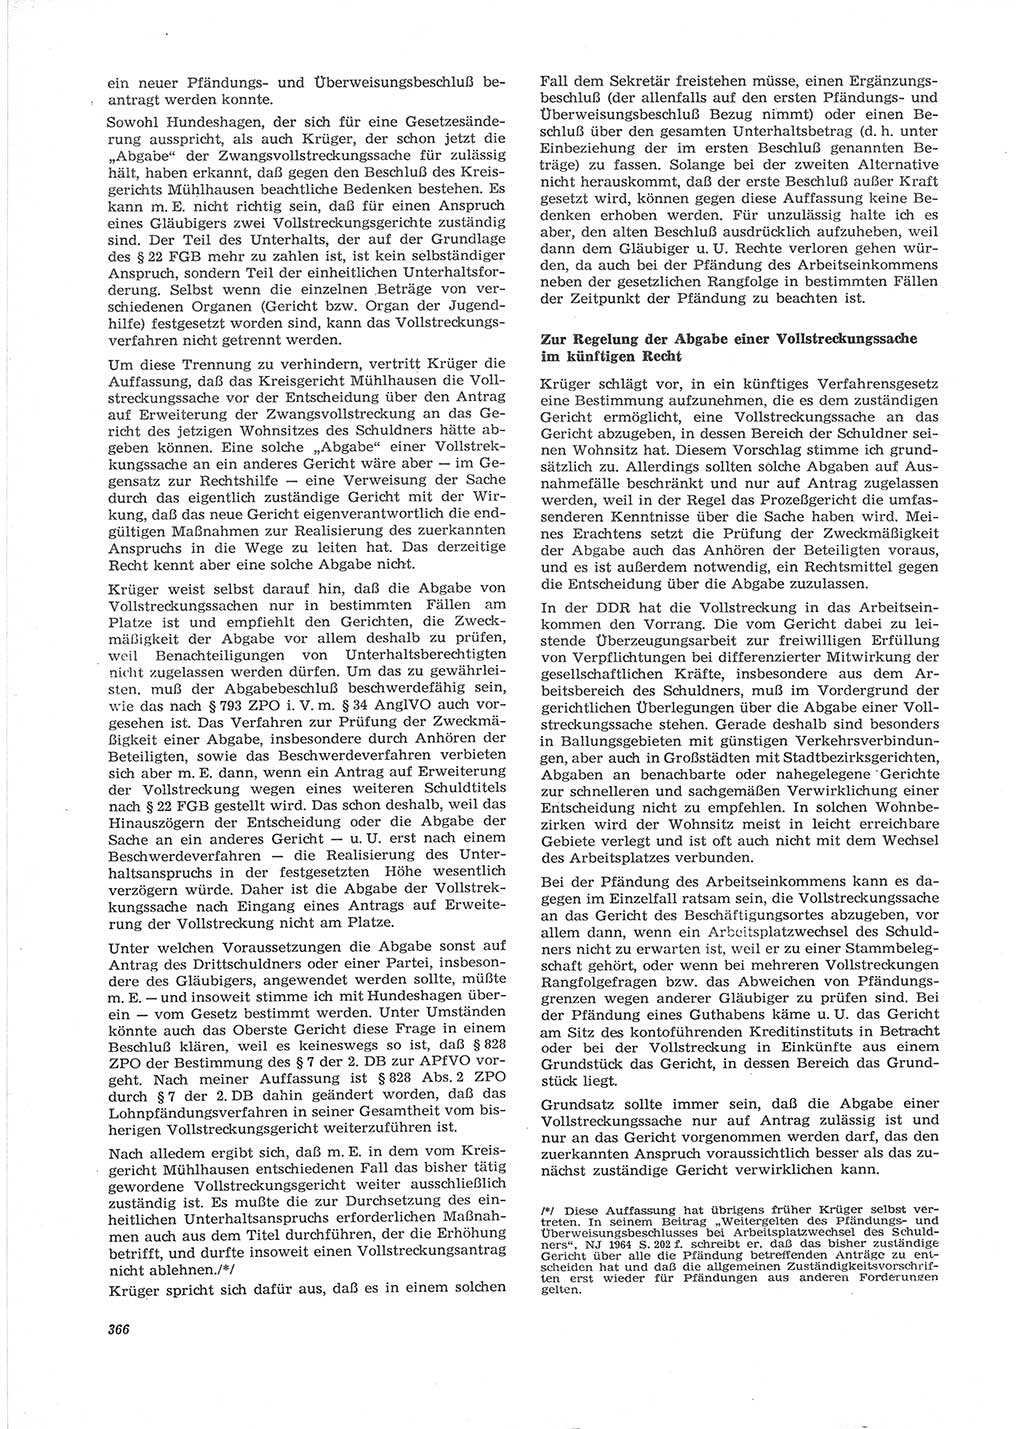 Neue Justiz (NJ), Zeitschrift für Recht und Rechtswissenschaft [Deutsche Demokratische Republik (DDR)], 28. Jahrgang 1974, Seite 366 (NJ DDR 1974, S. 366)